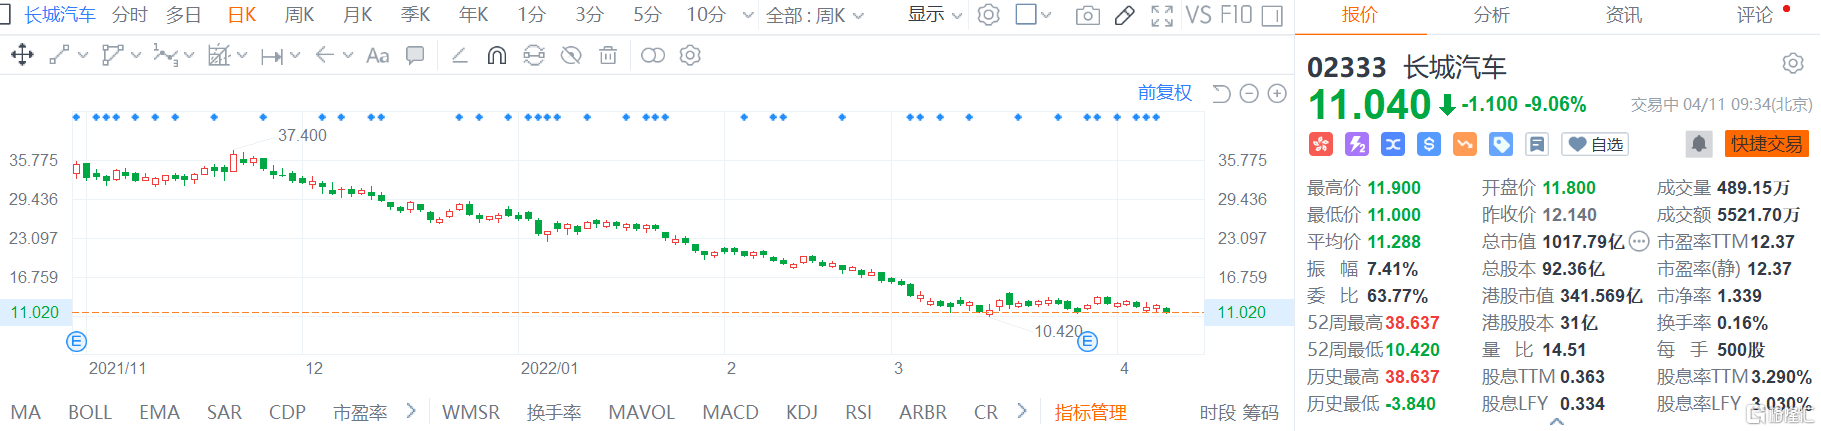 长城汽车(2333.HK)股价快速走低 现报11.04港元跌幅9%